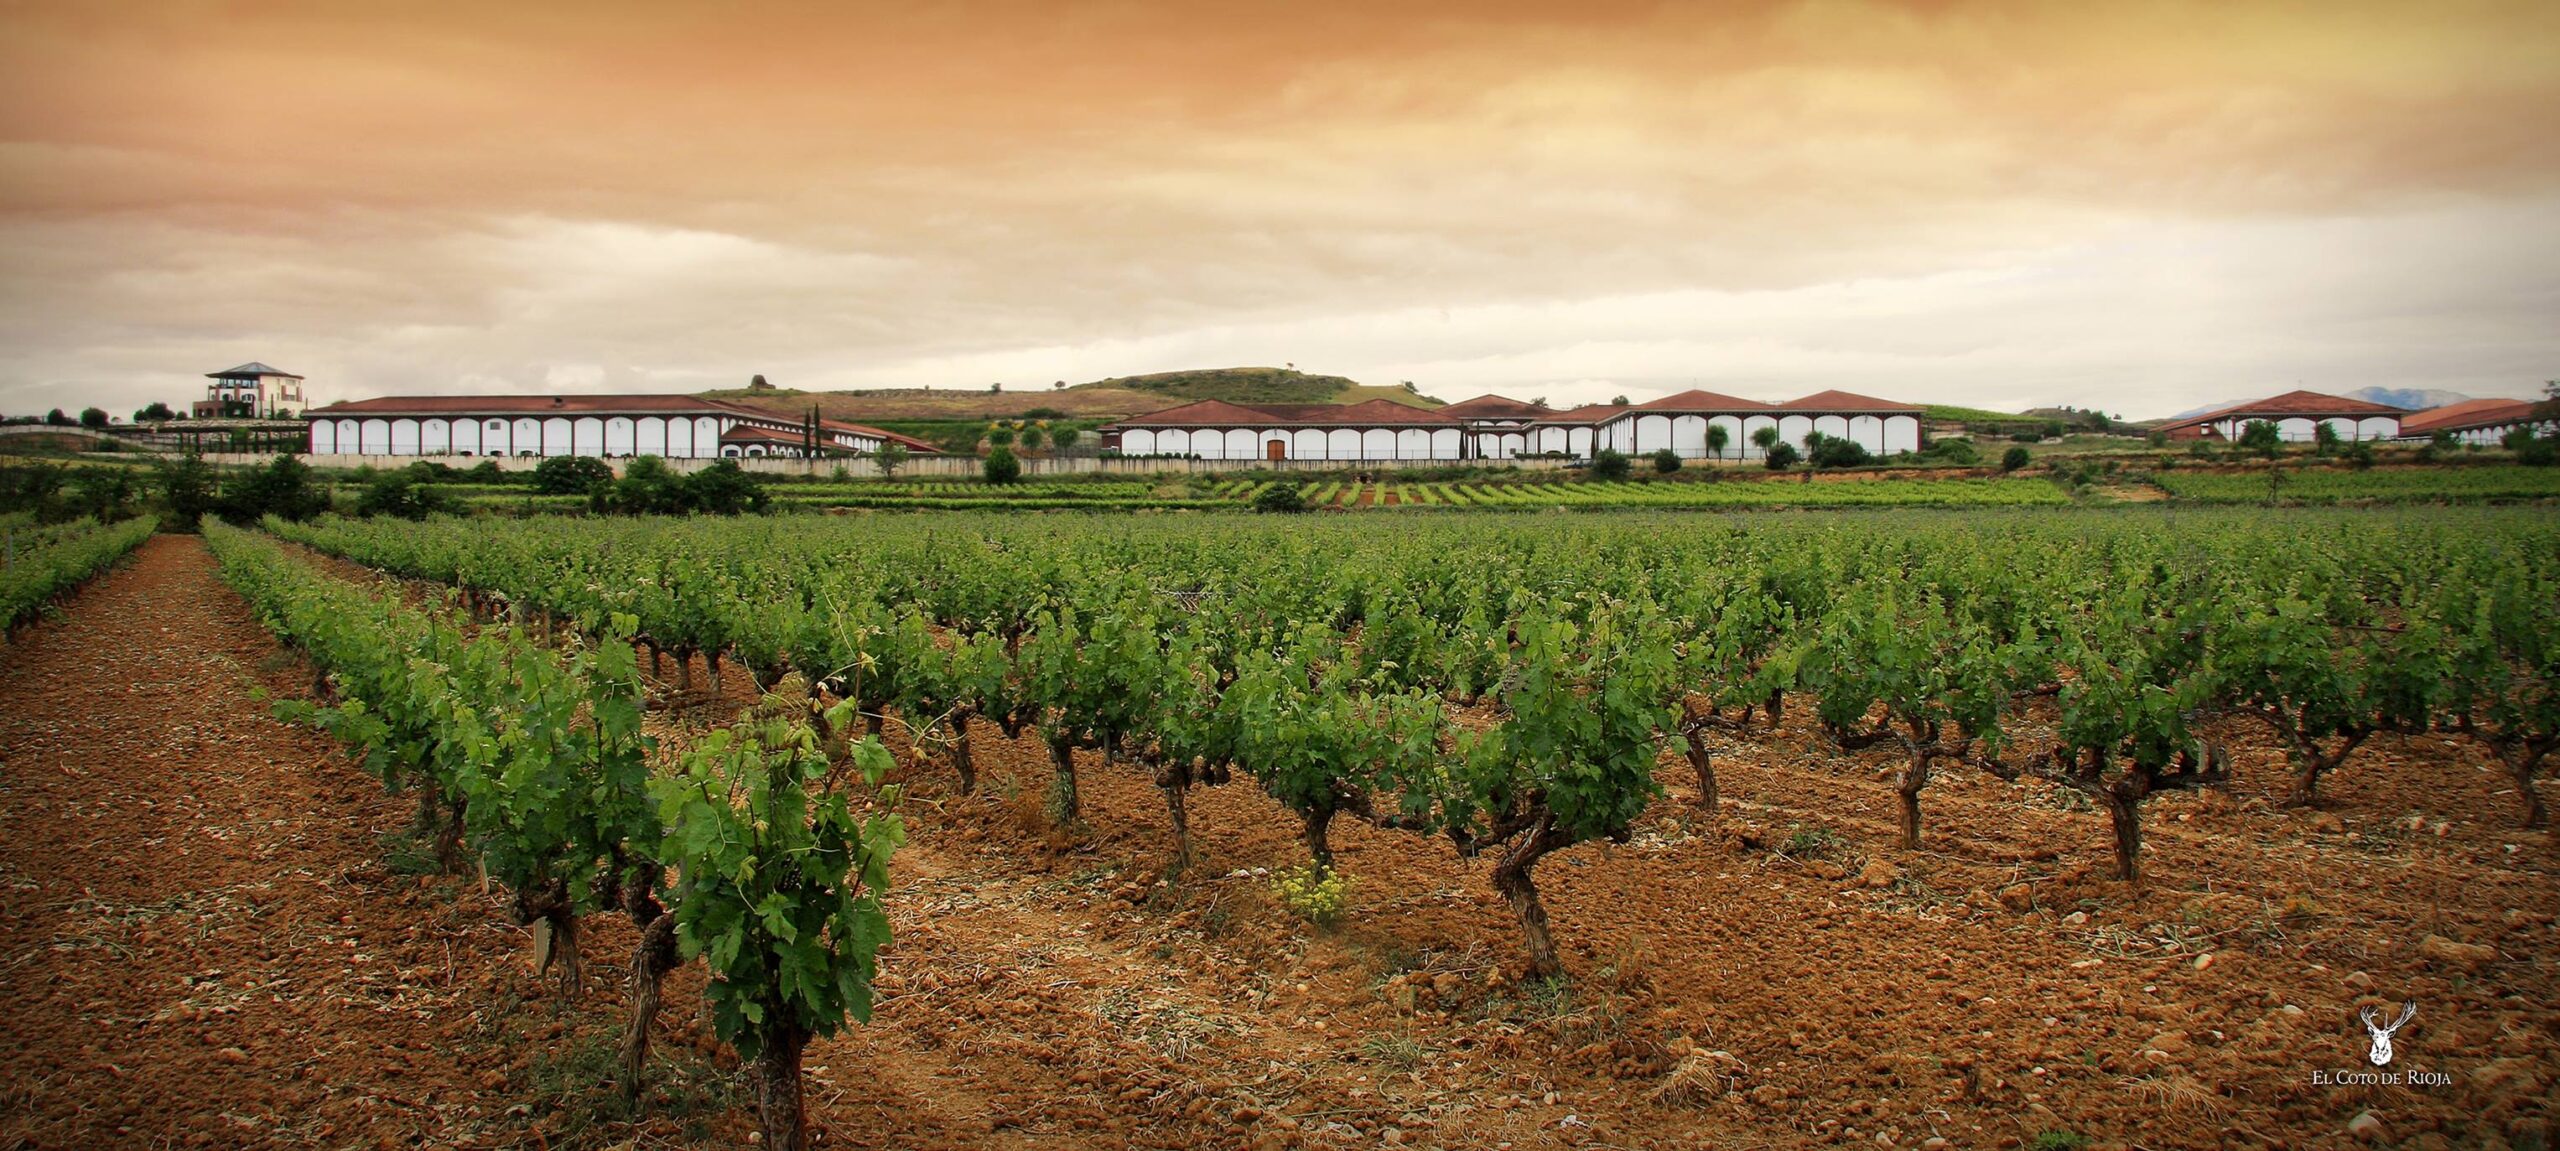 El Coto de Rioja